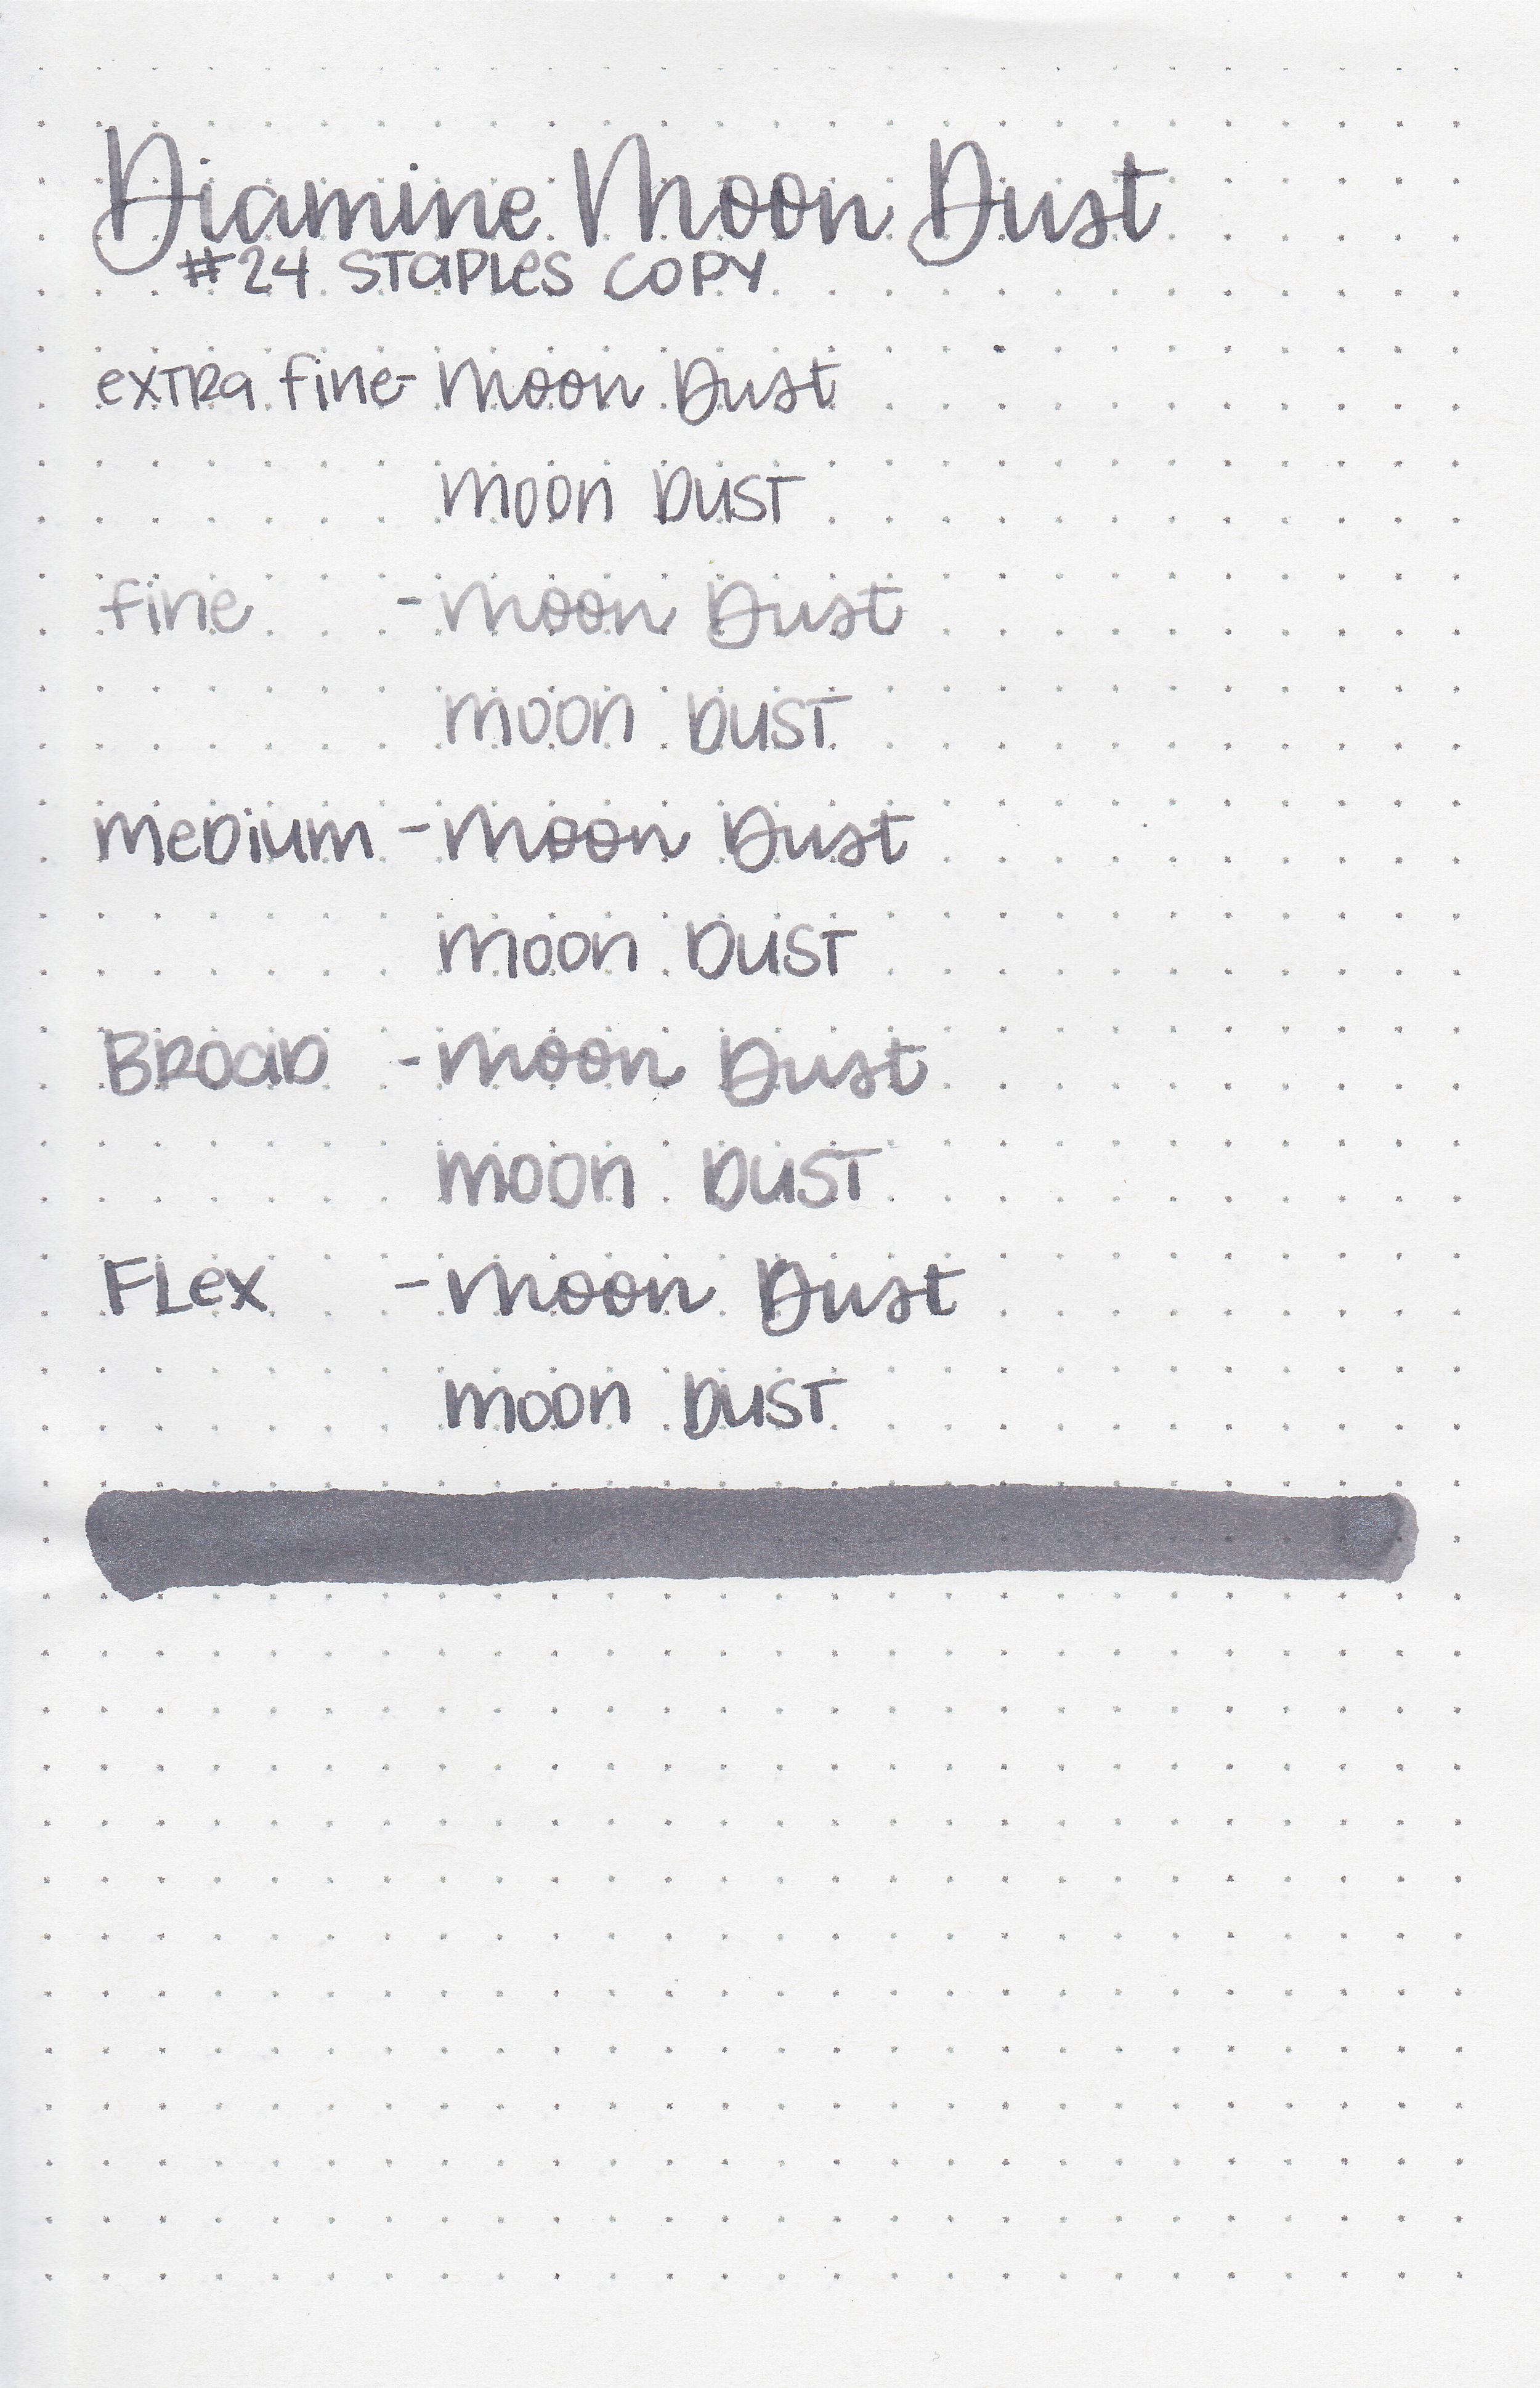 d-moon-dust-11.jpg